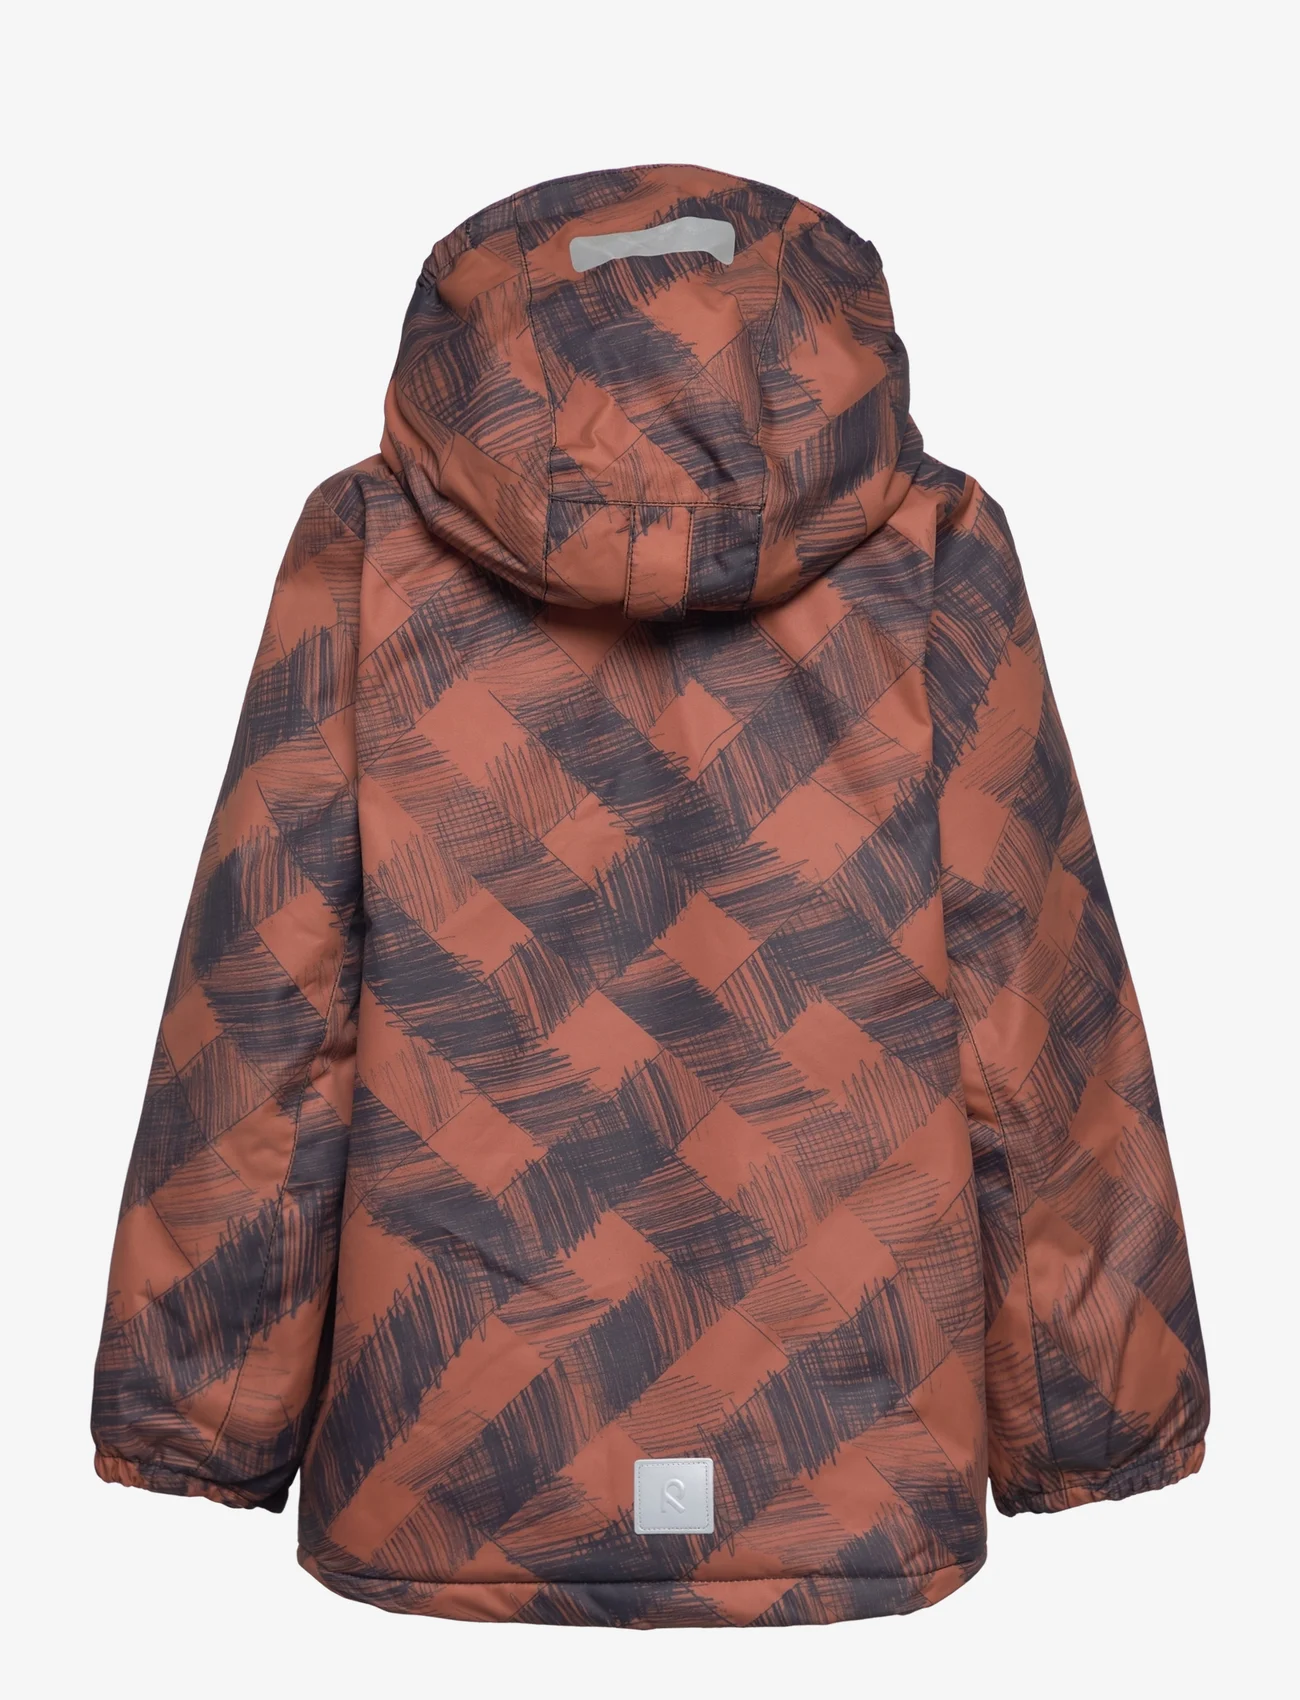 Reima - Winter jacket, Nuotio - talvitakit - cinnamon brown - 1